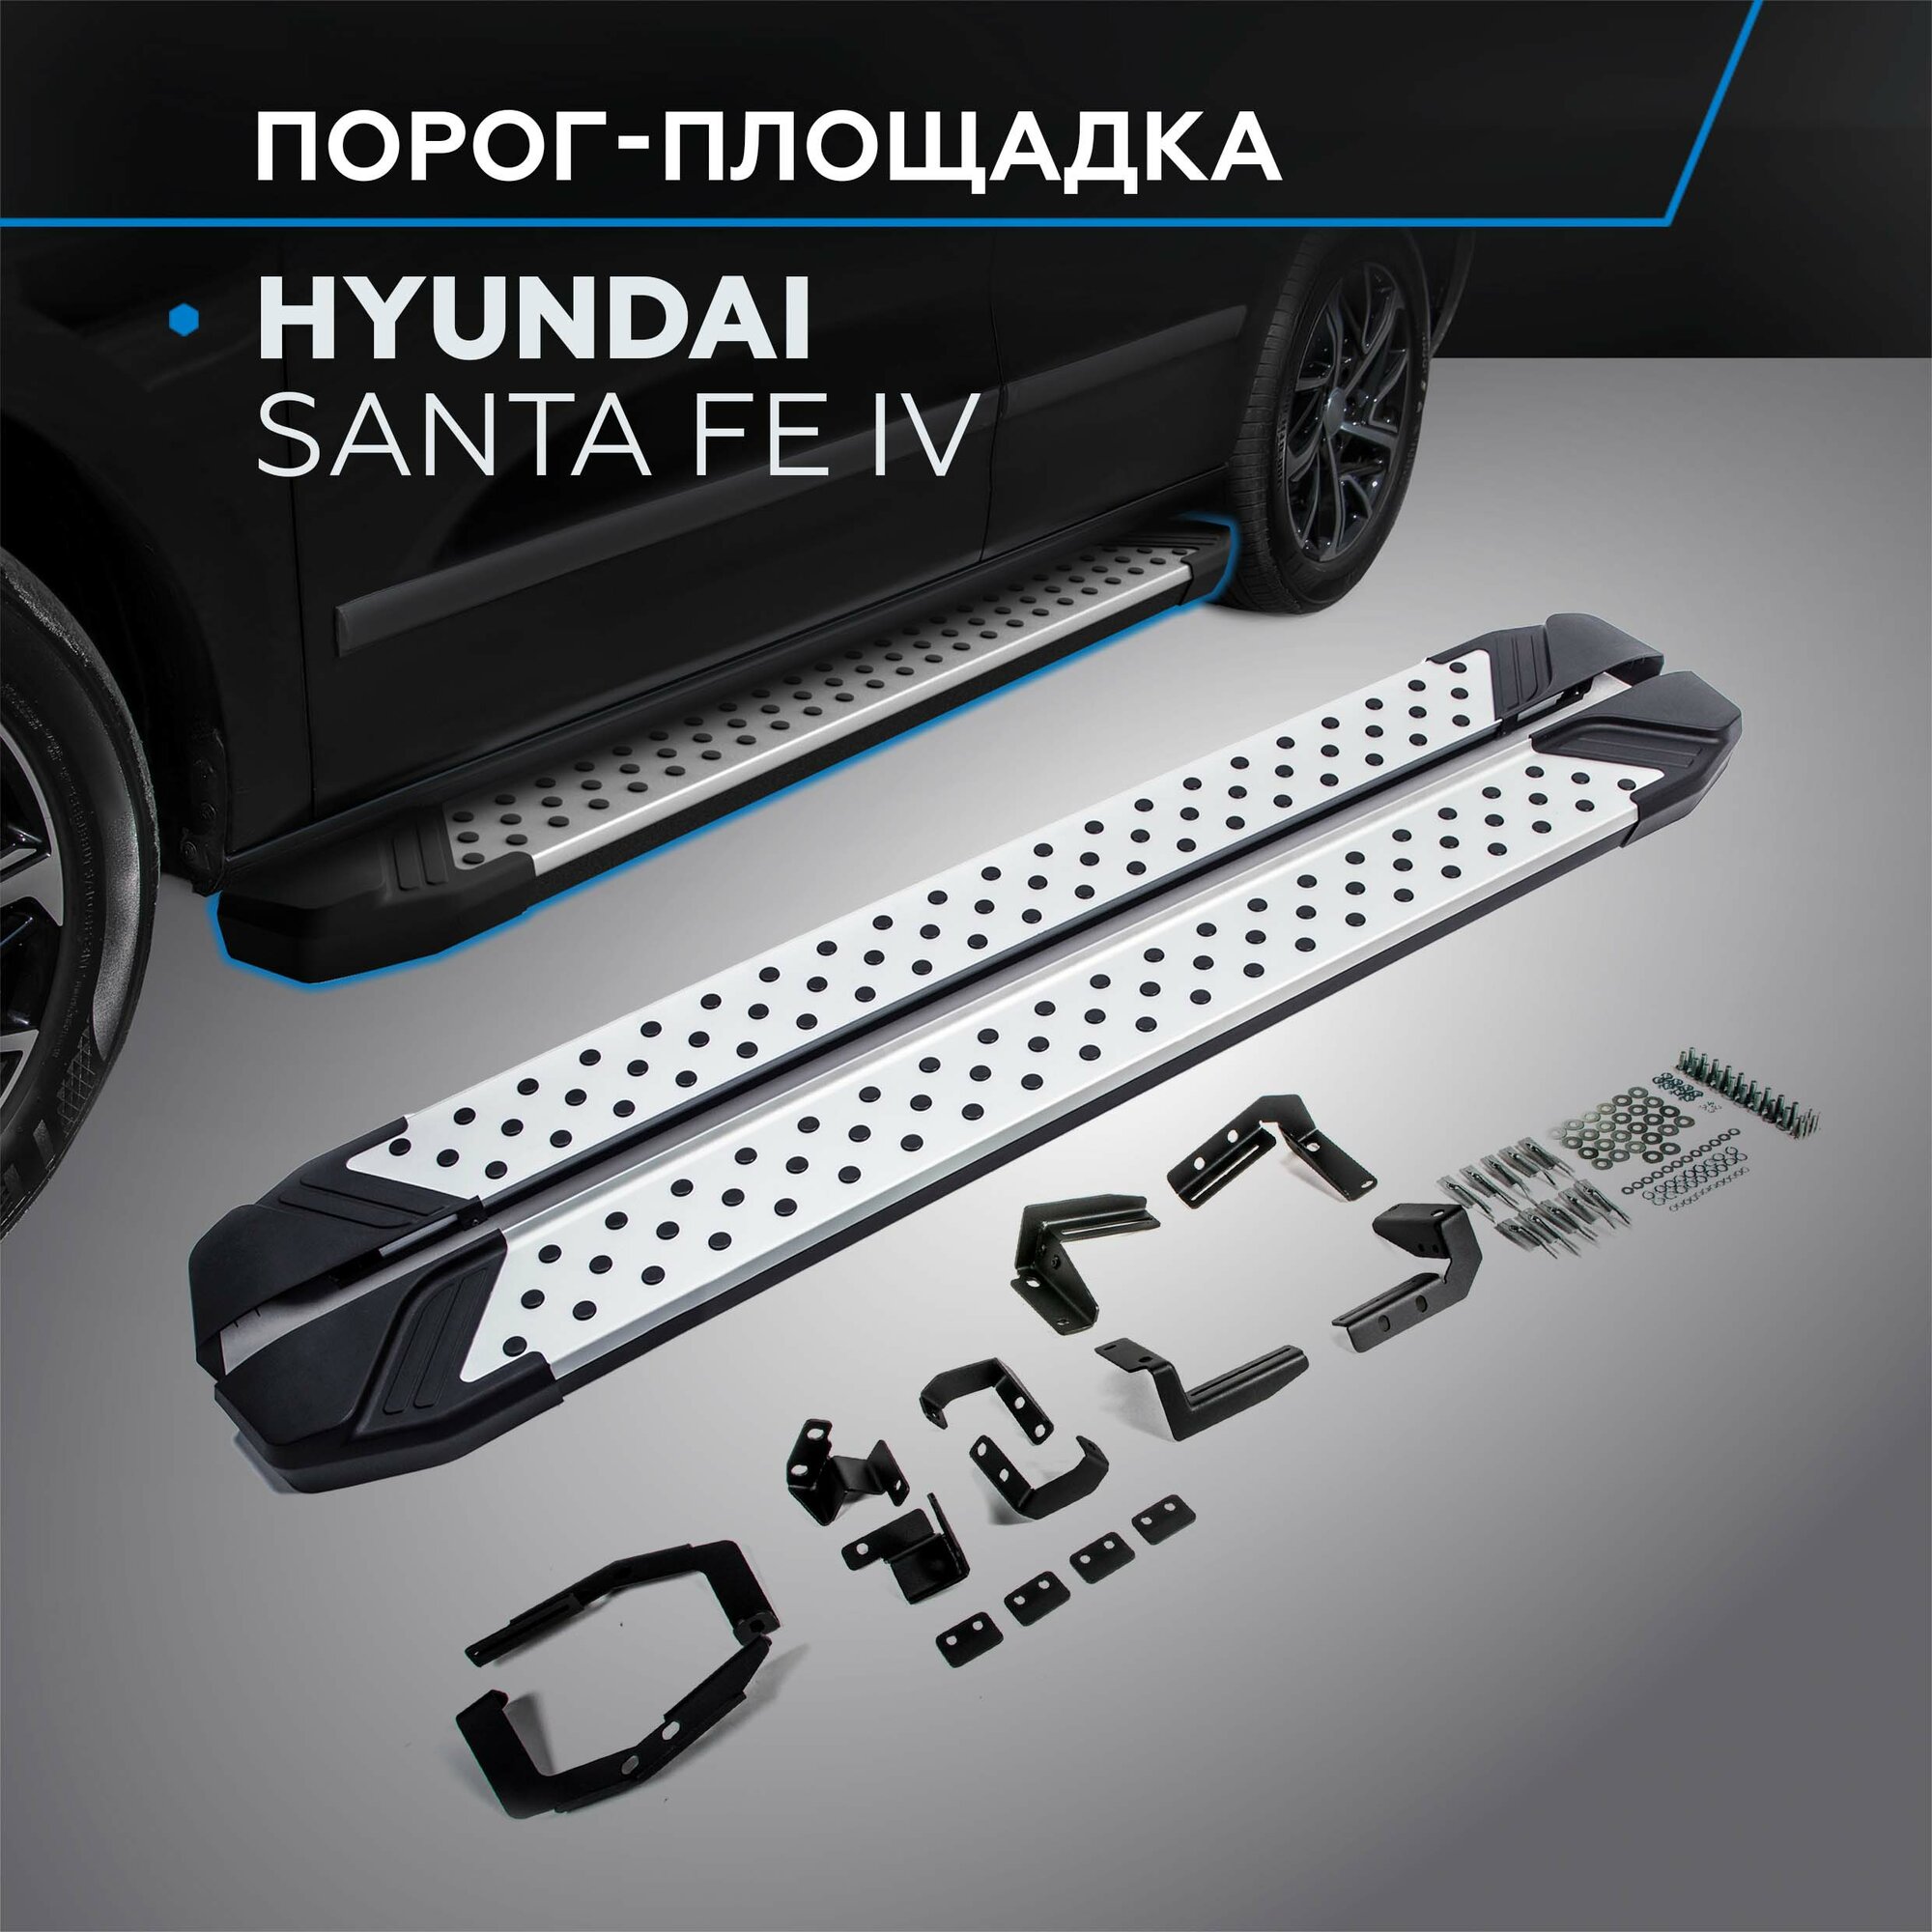 Пороги на автомобиль "Bmw-Style круг" Rival для Hyundai Santa Fe IV 2018-2021 180 см 2 шт алюминий D180AL.2307.1